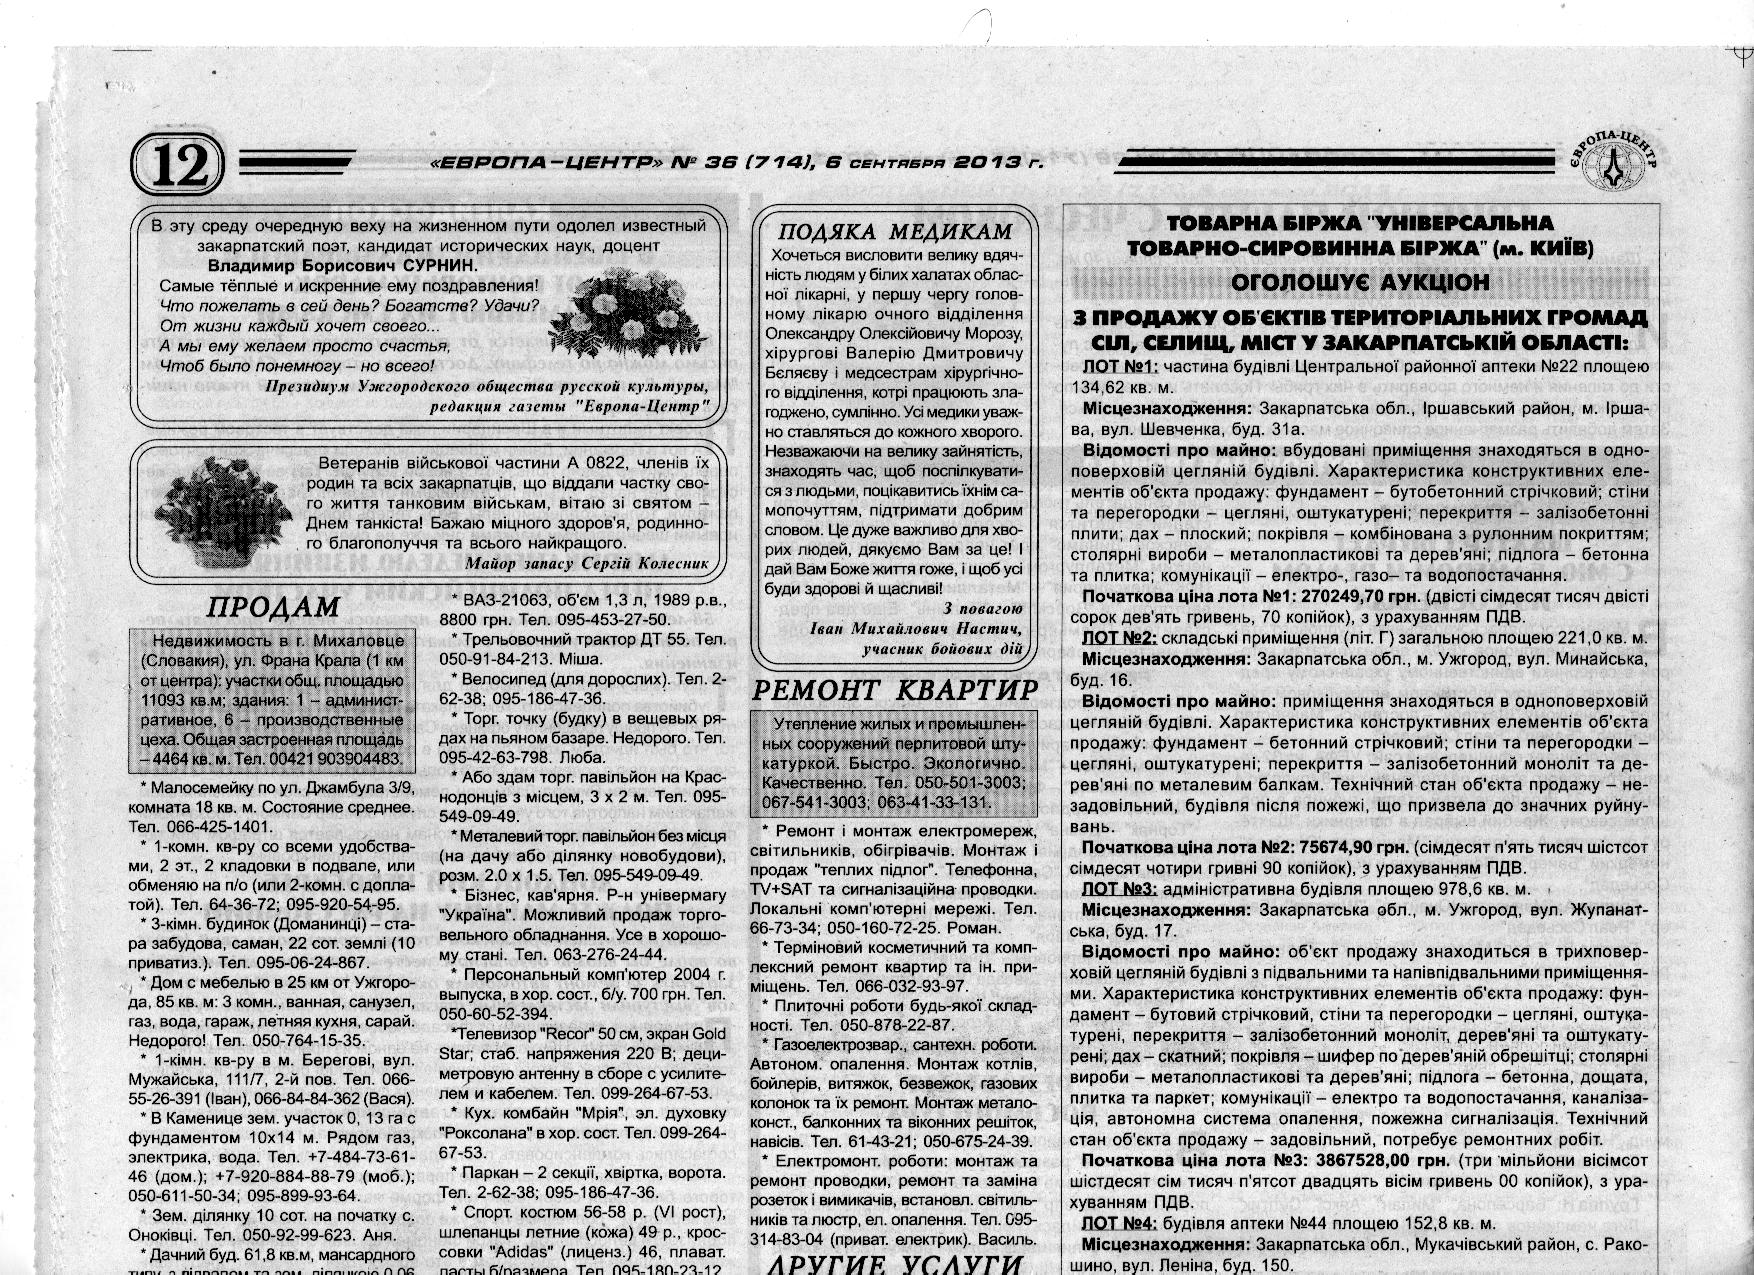 В Ужгороді невідомі особи викупили весь тираж газети з оголошенням про продаж колишньої синагоги